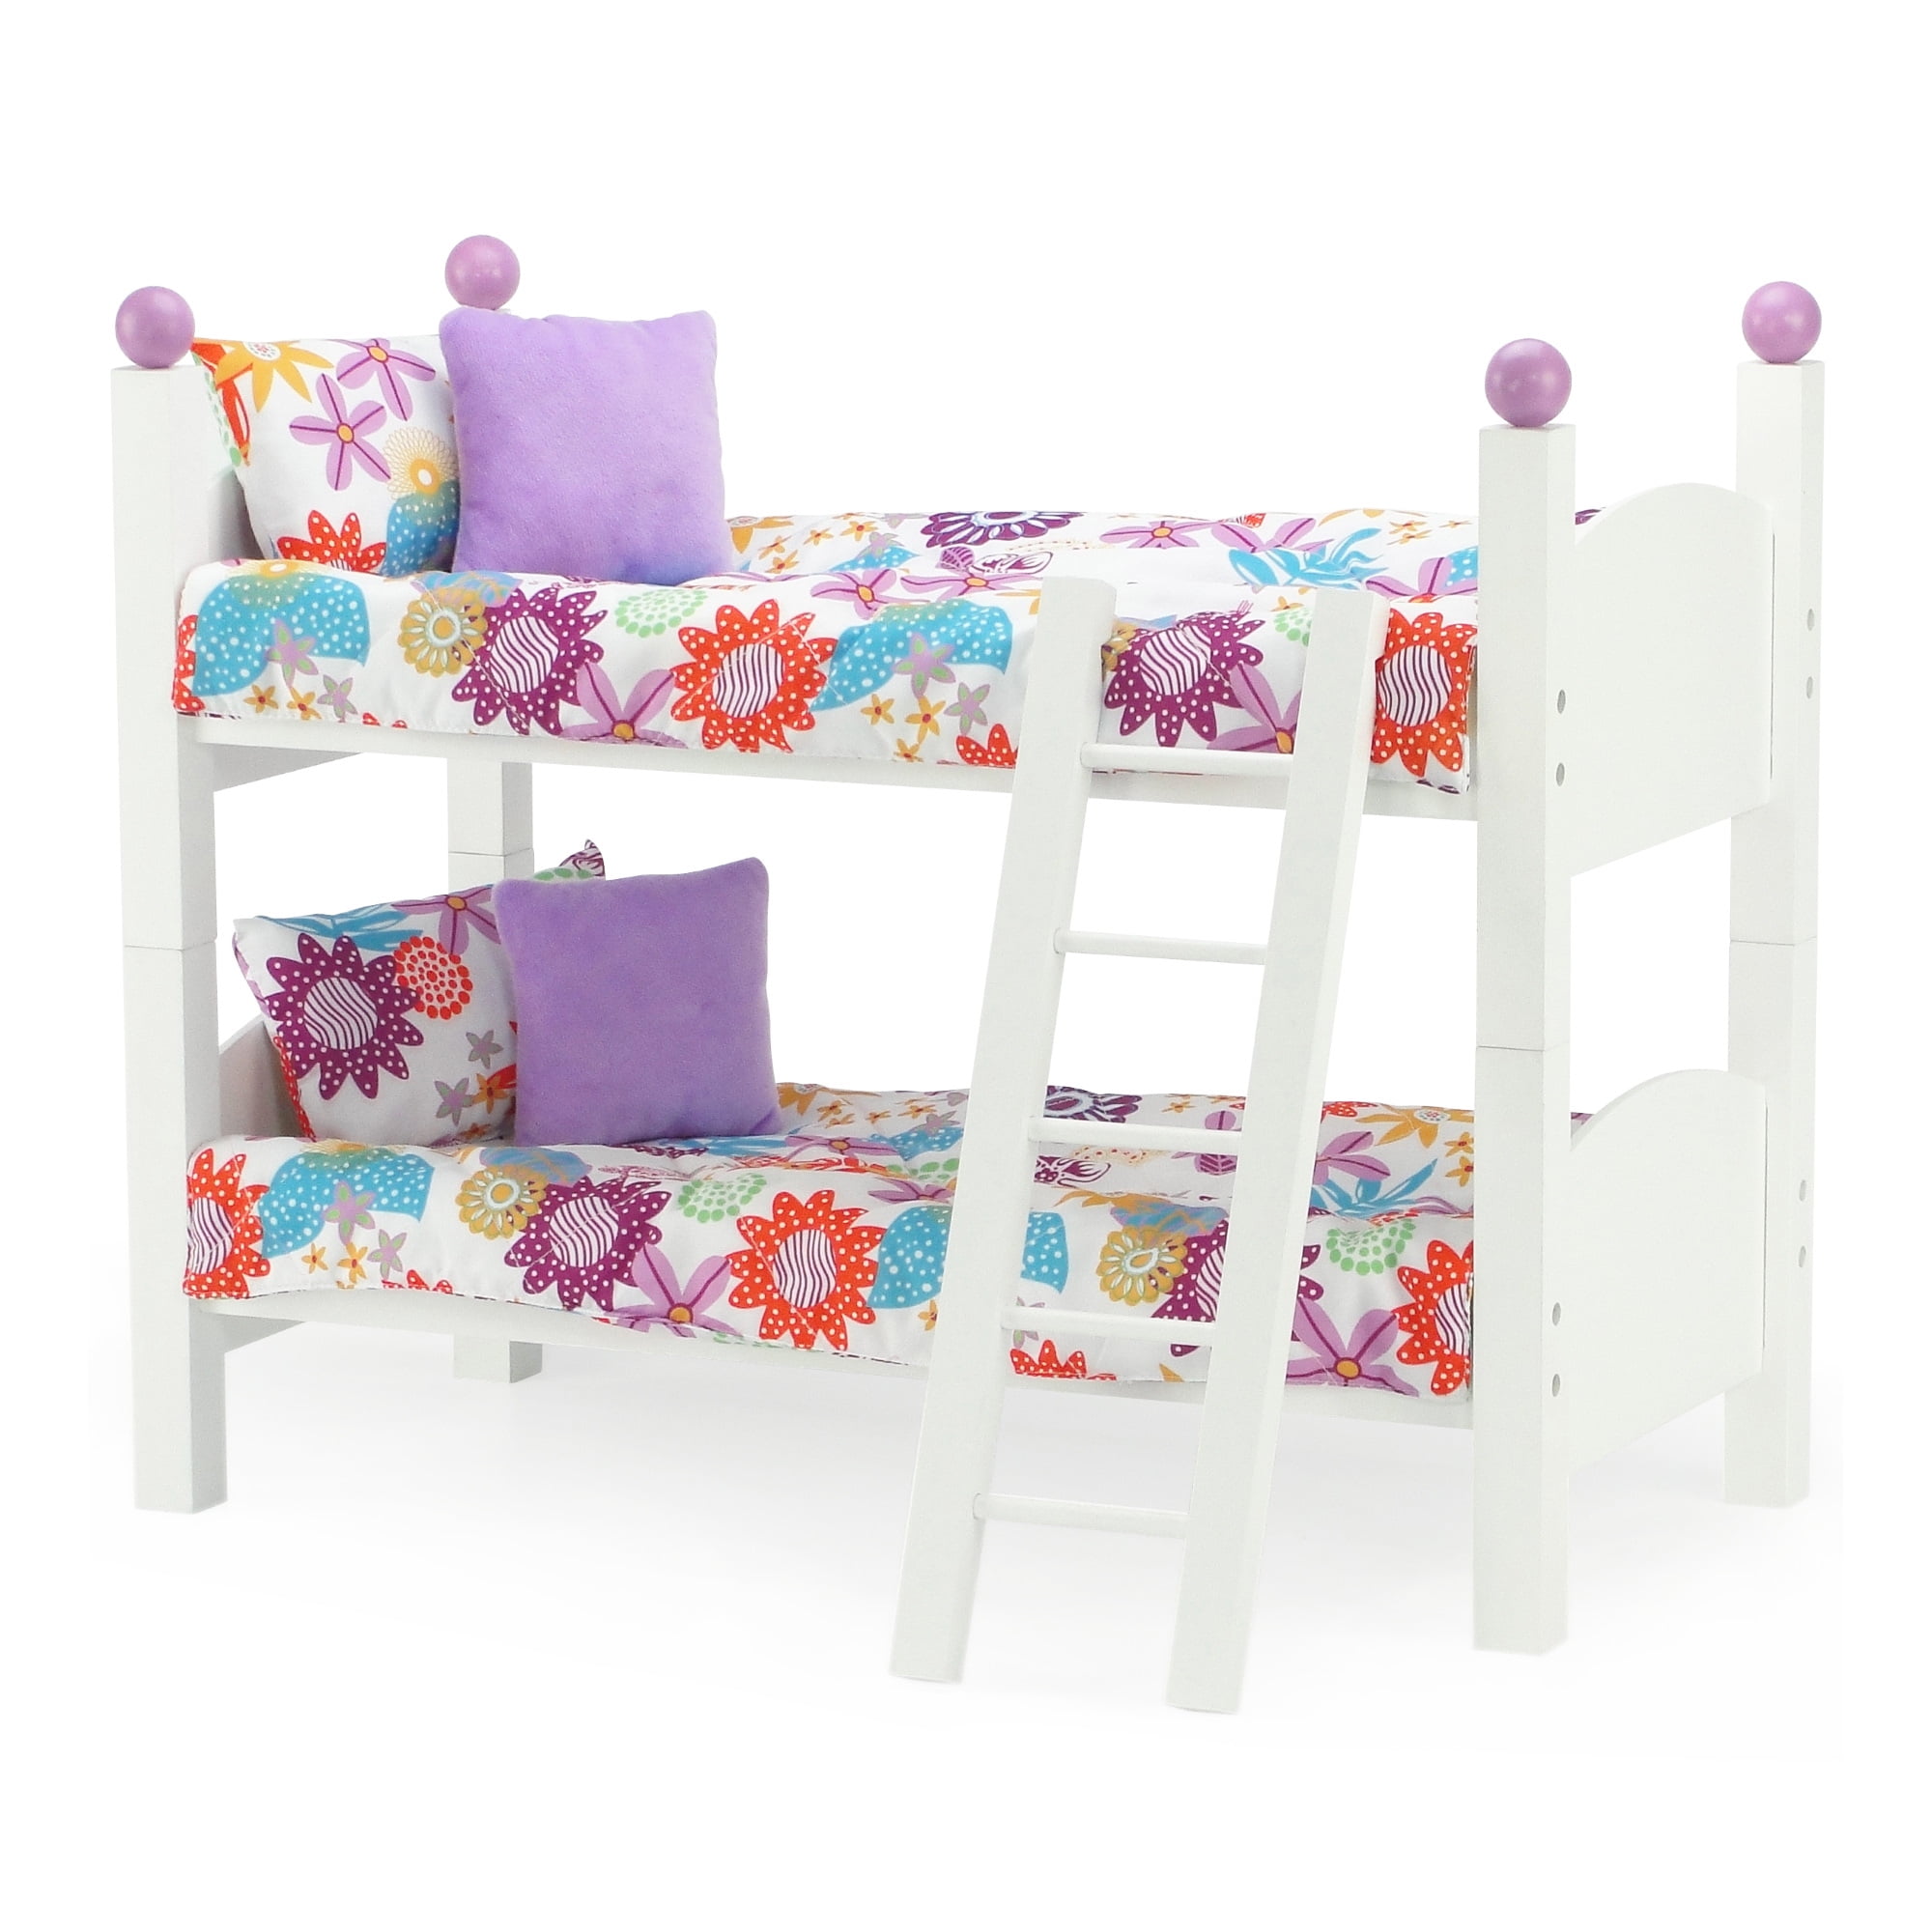 1 Set Beds With Ladder Bedroom Furniture For Dolls  fashion 